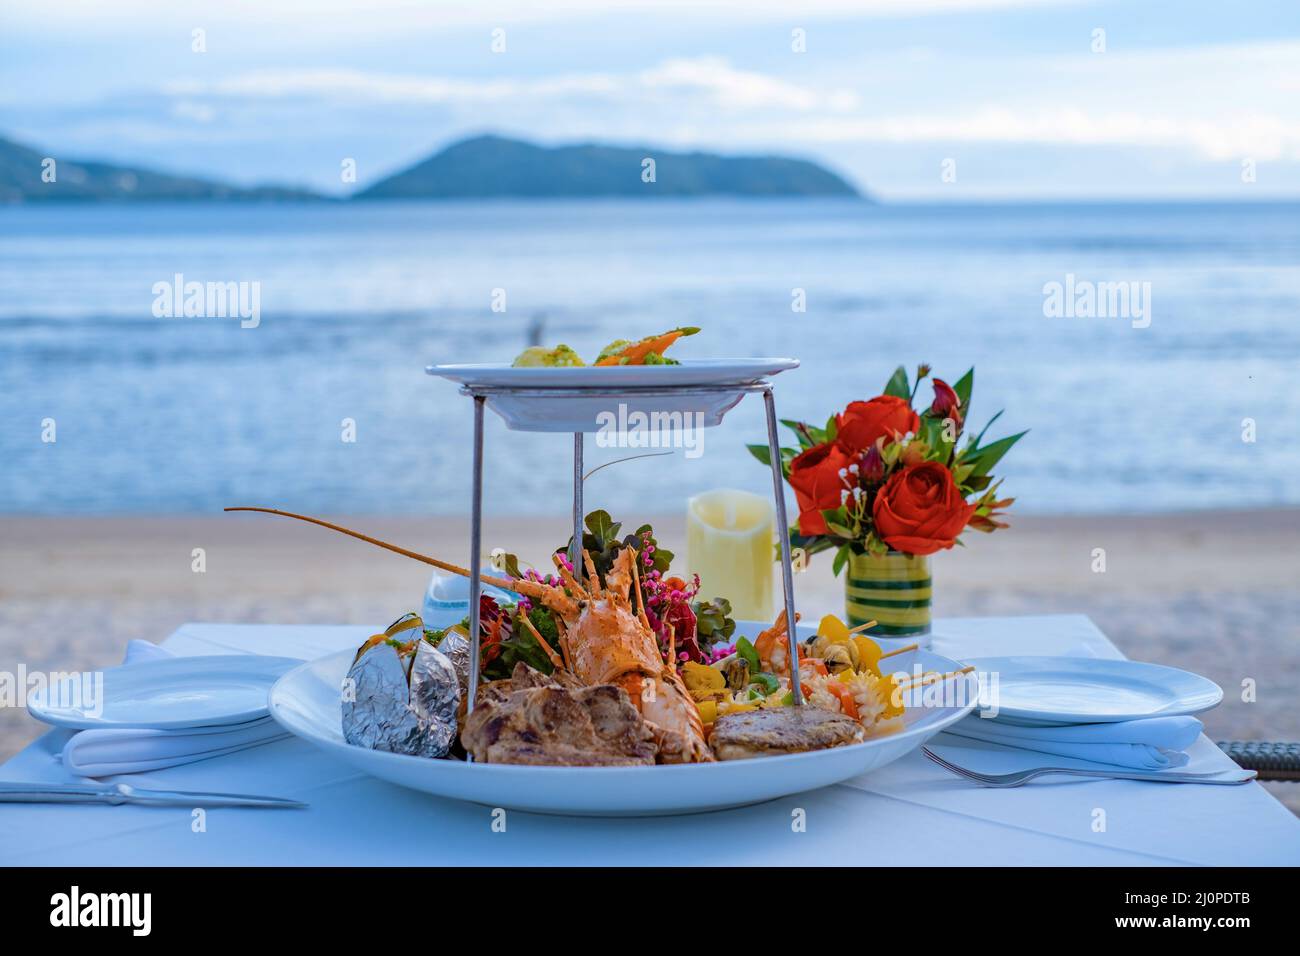 Cena romántica en la playa con langosta, marisco, carne y ensalada Foto de stock